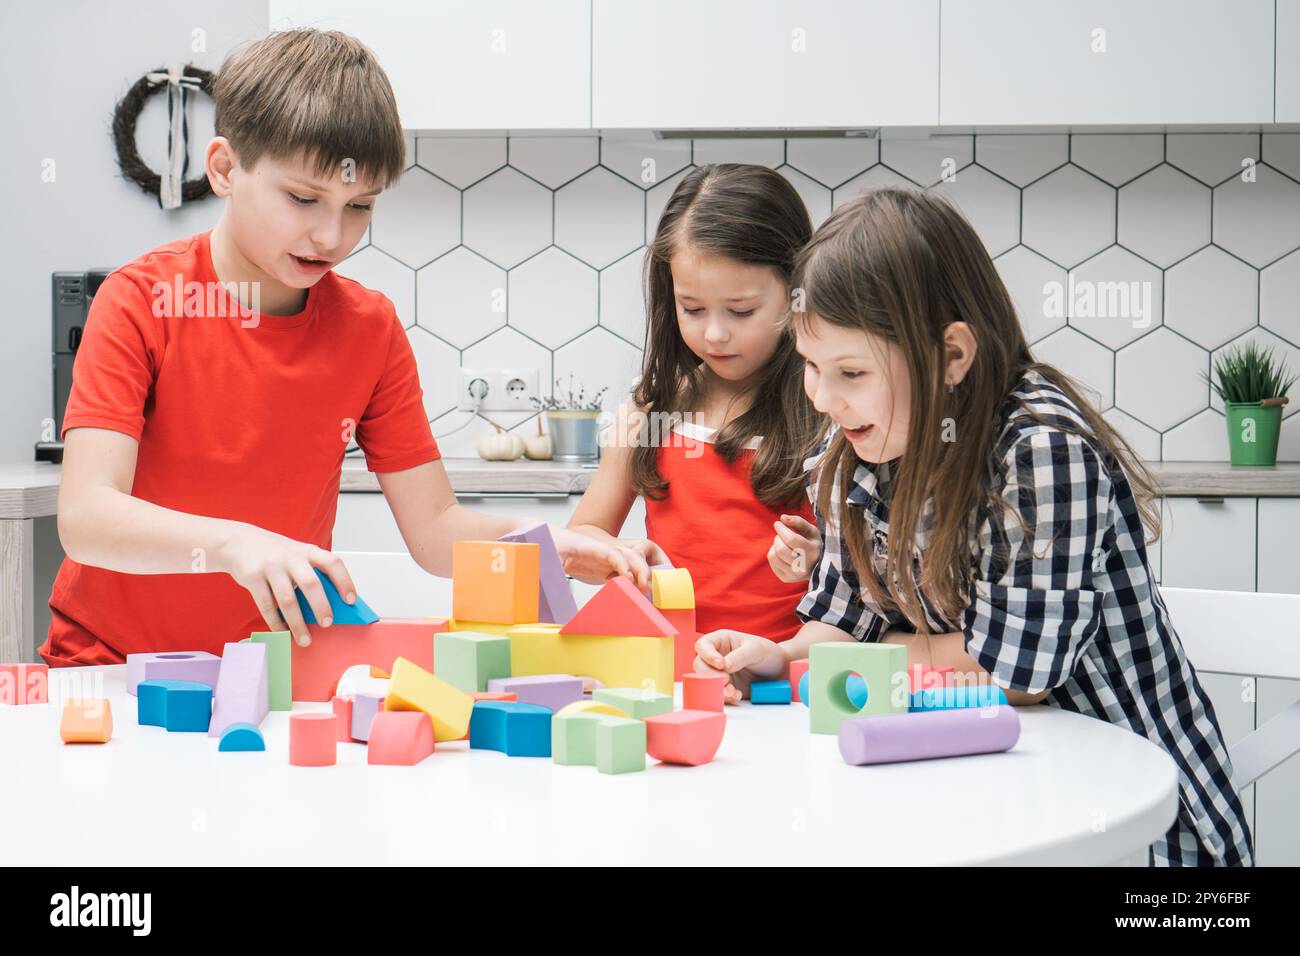 Drôle d'amis d'école jouent constructeur sur la table de cuisine. Les filles et les garçons collectent des détails colorés de lego, construisent la ville des jouets. Banque D'Images